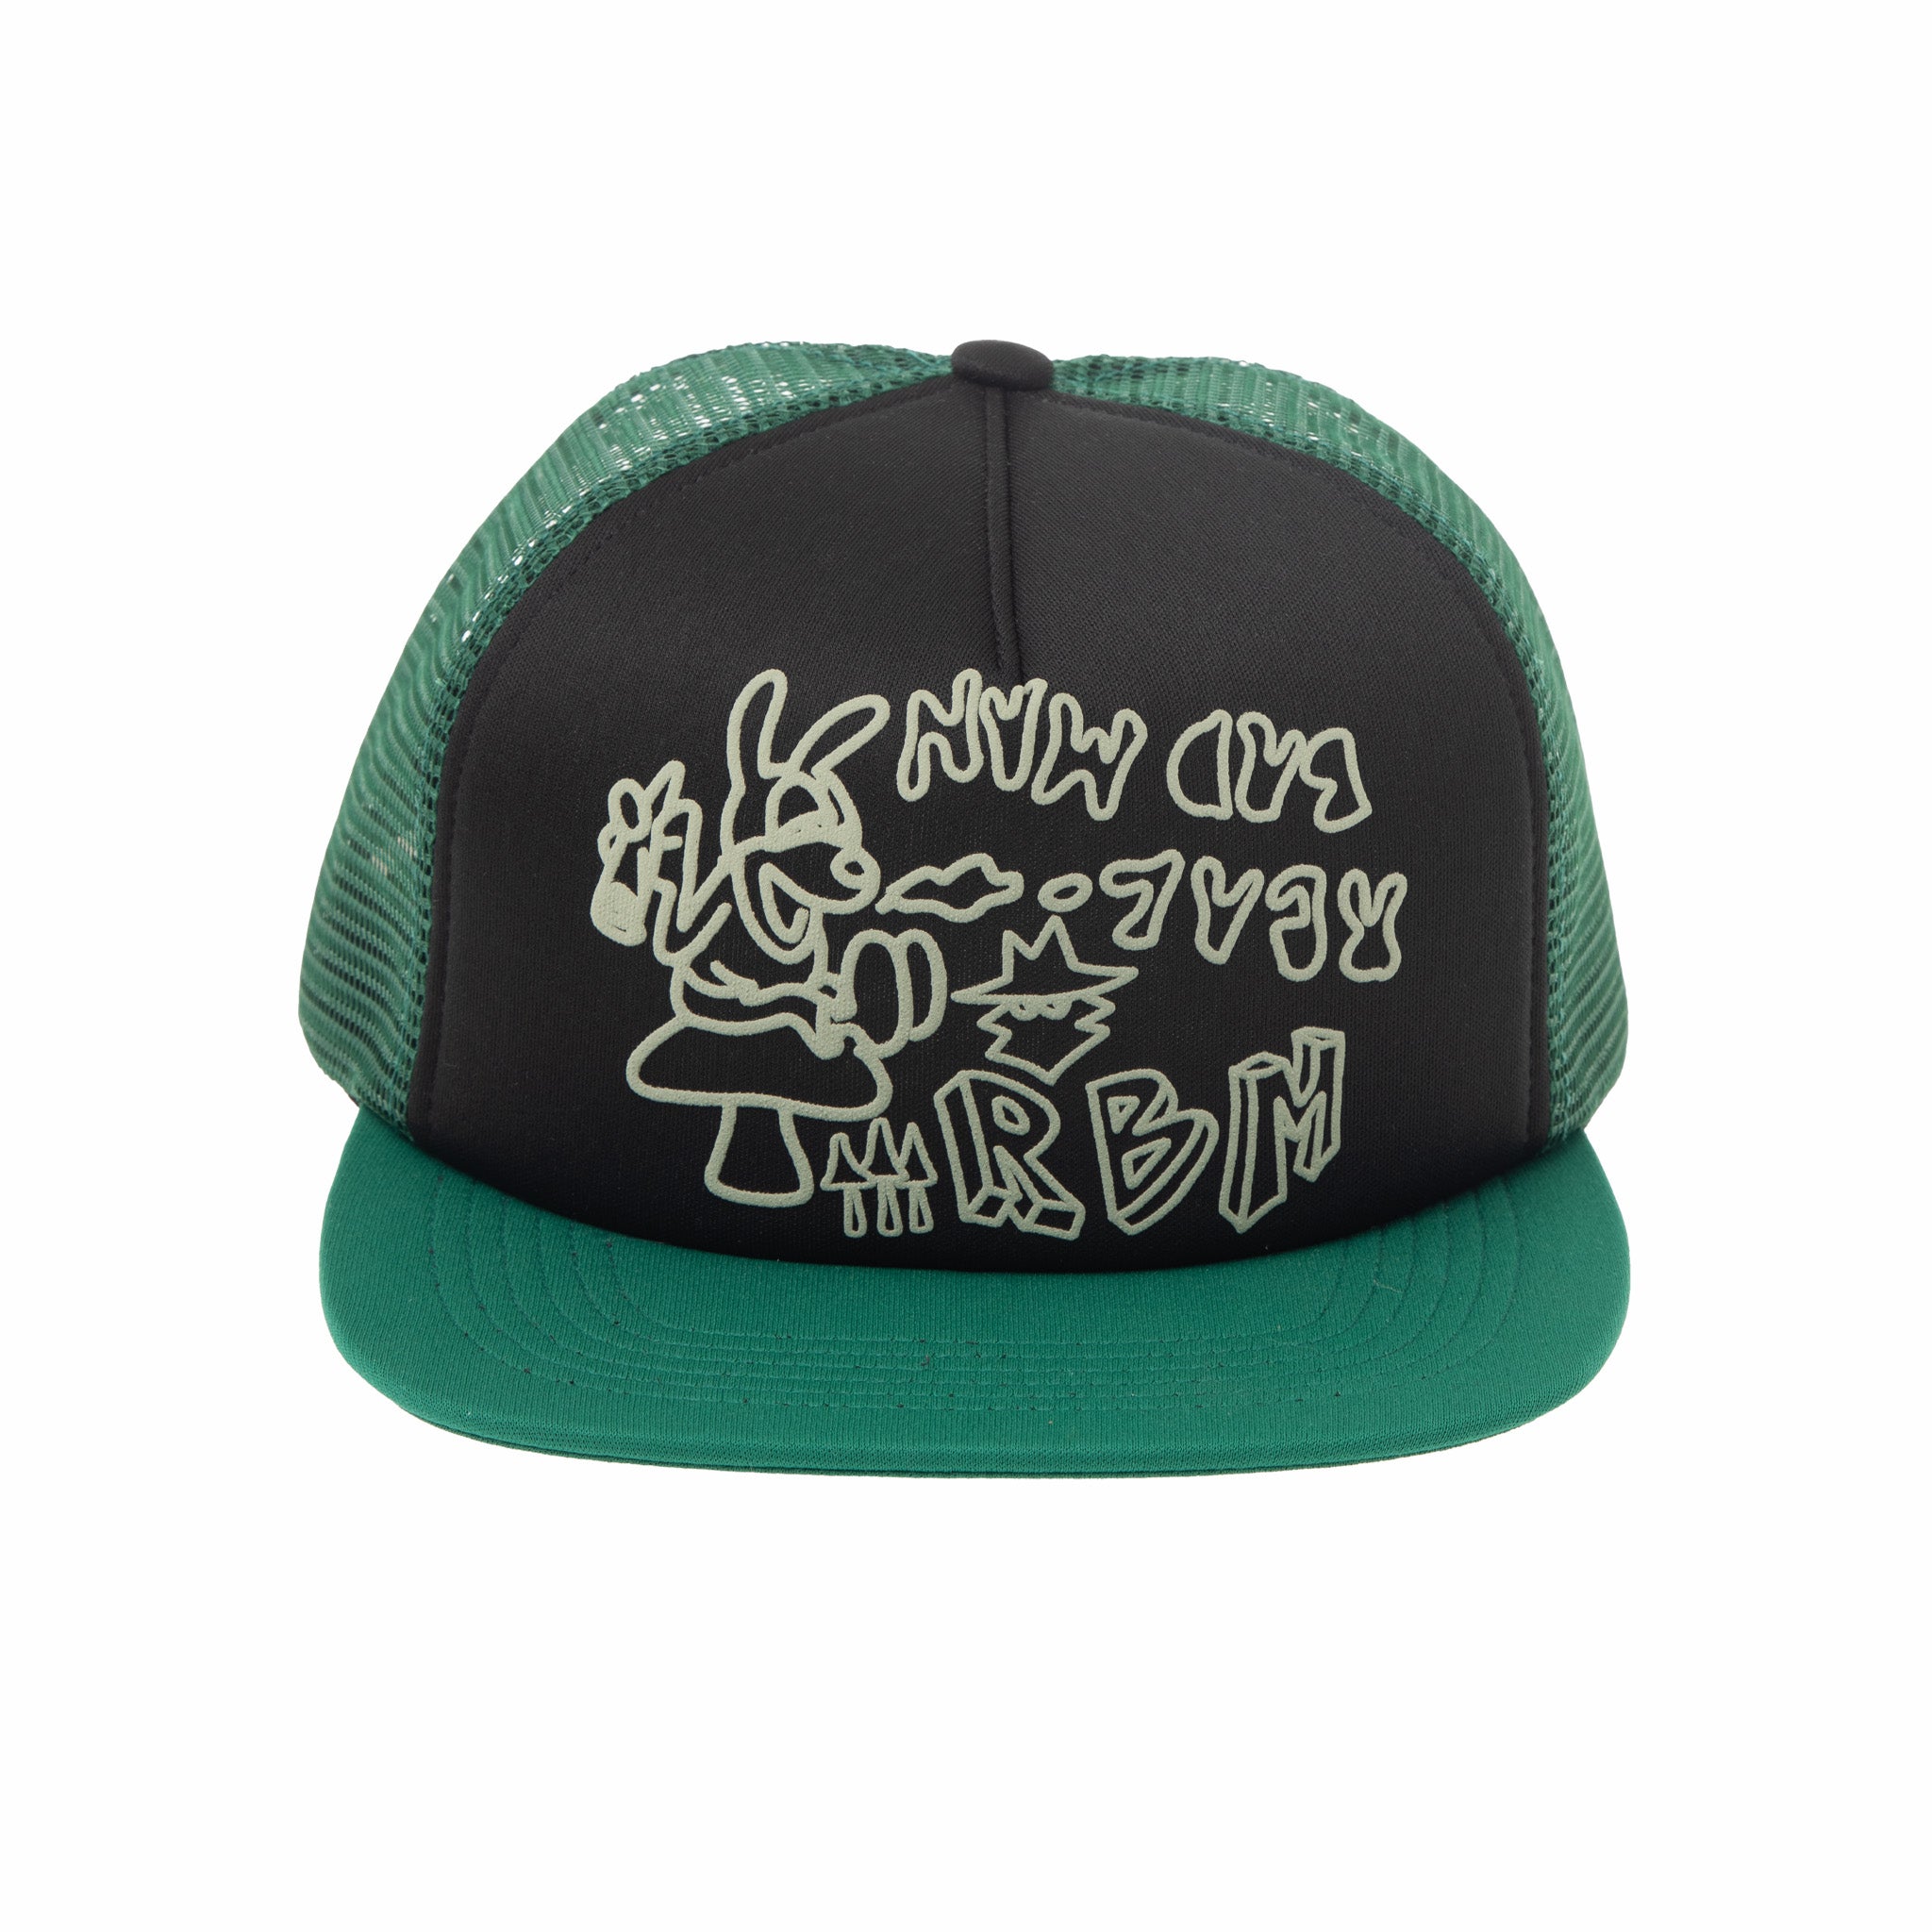 Real Bad Man Deliverance Trucker Hat (Green/Black) - August Shop